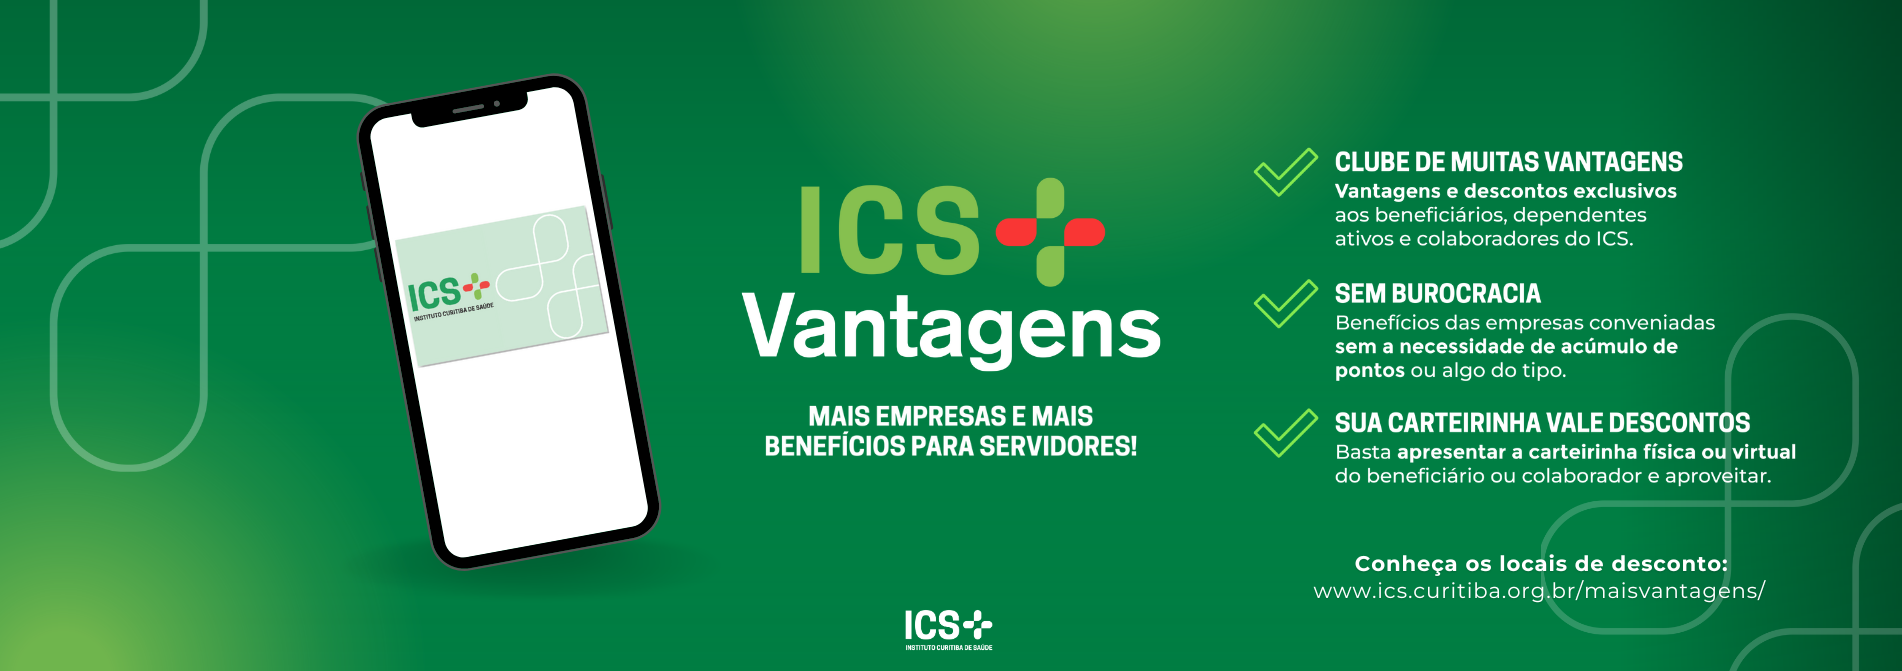 Conheça todos os parceiros do ICS+ Vantagens